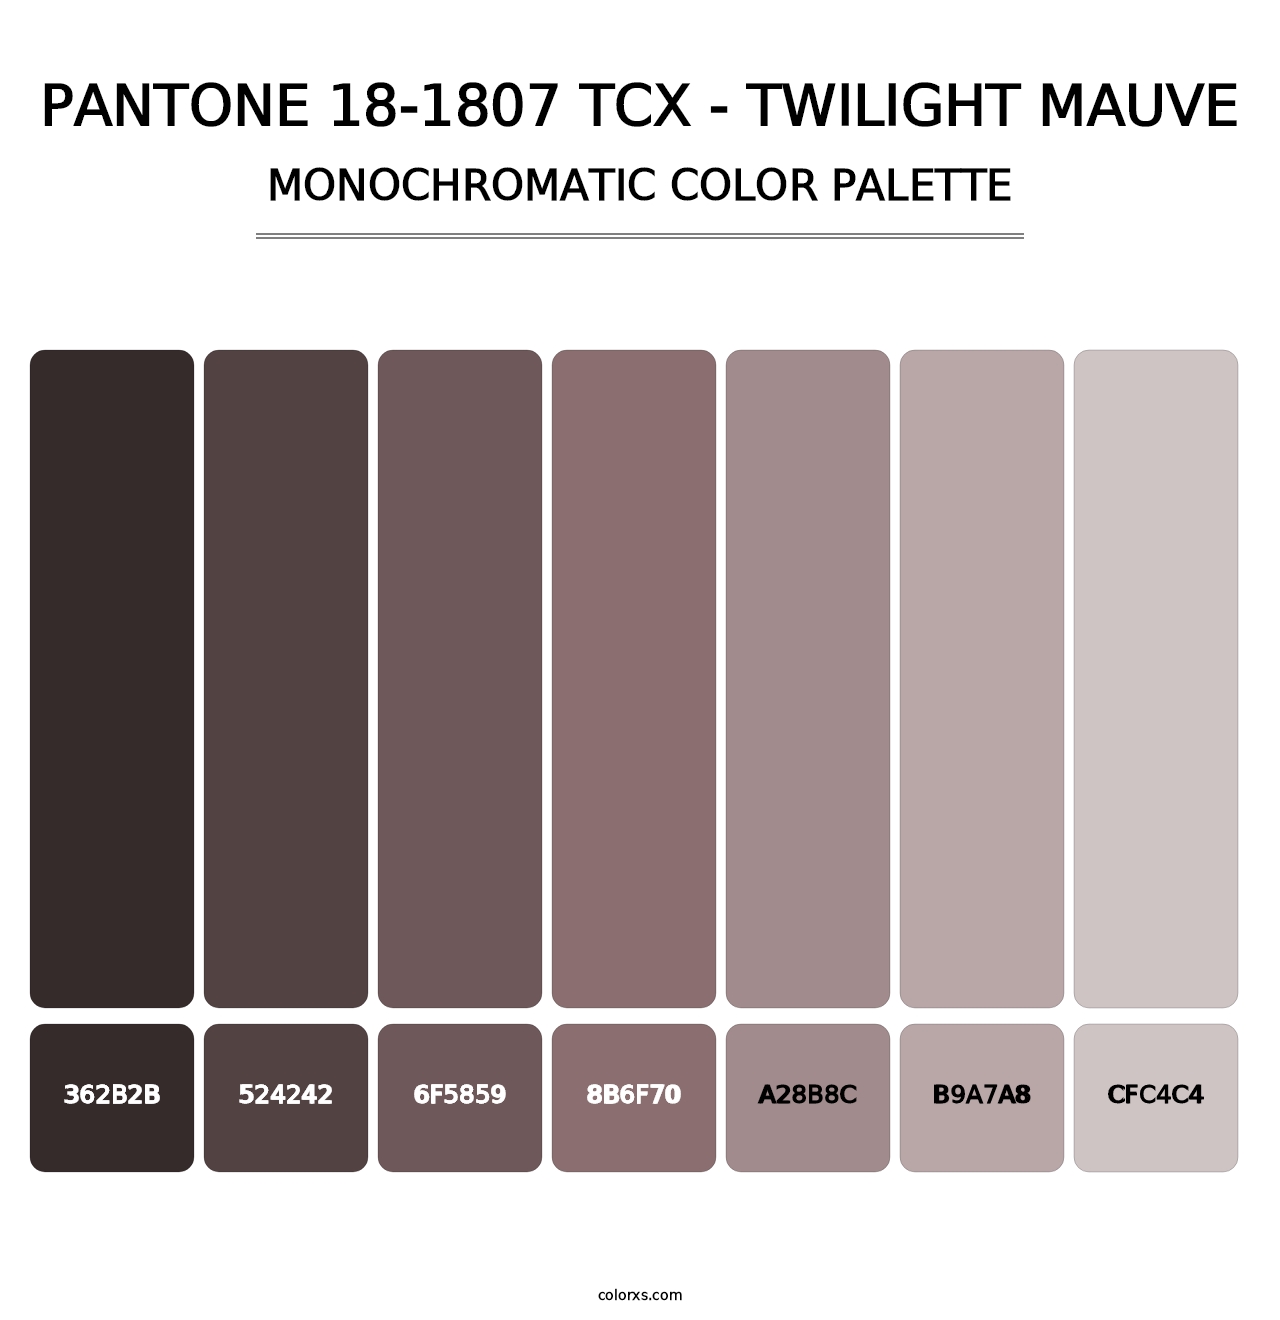 PANTONE 18-1807 TCX - Twilight Mauve - Monochromatic Color Palette